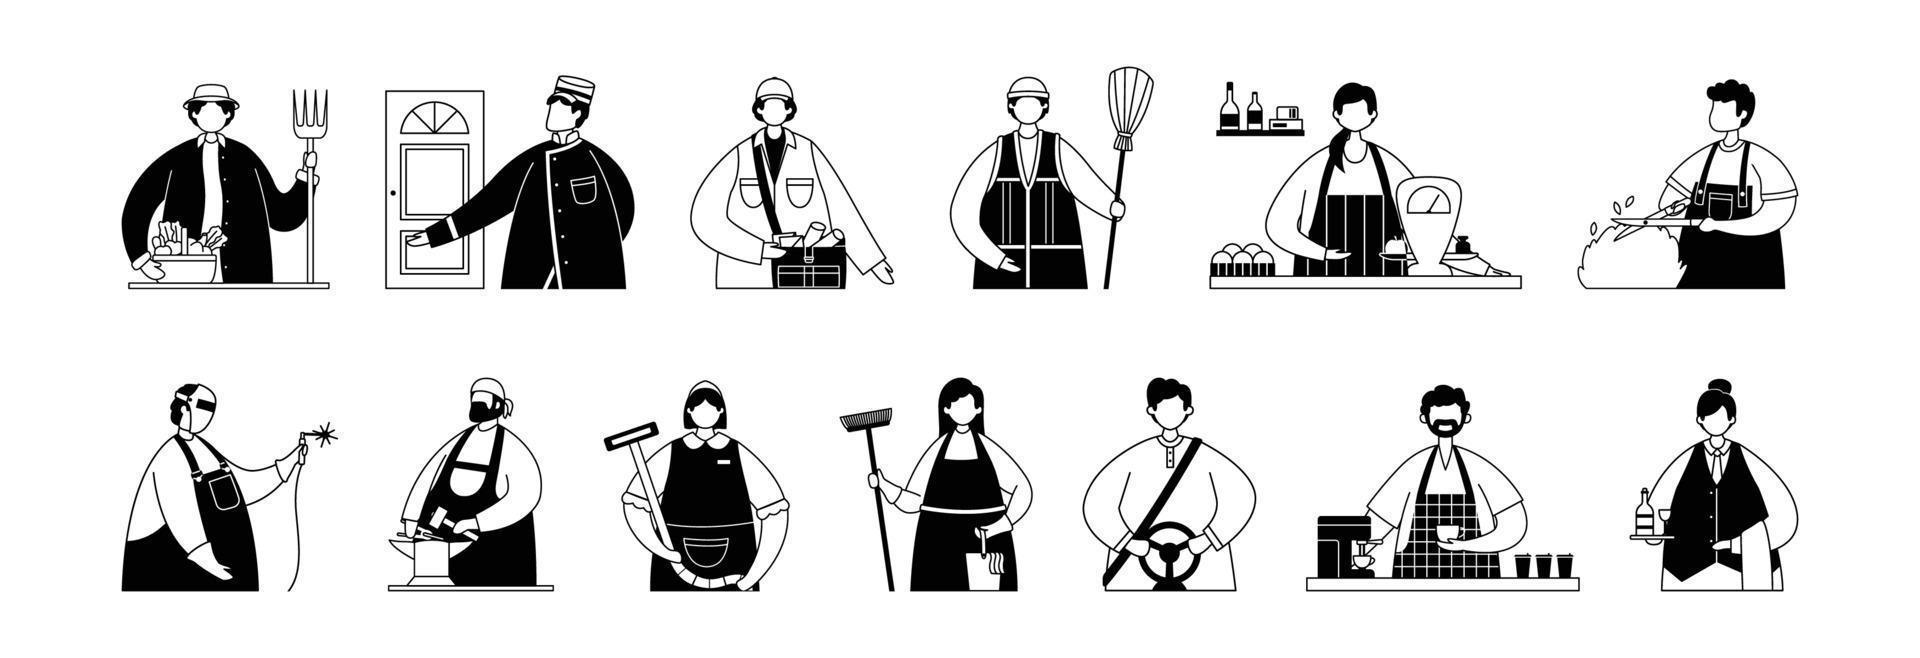 vektor uppsättning av illustrationer av professionell service arbetare och hantverkare. linje konst